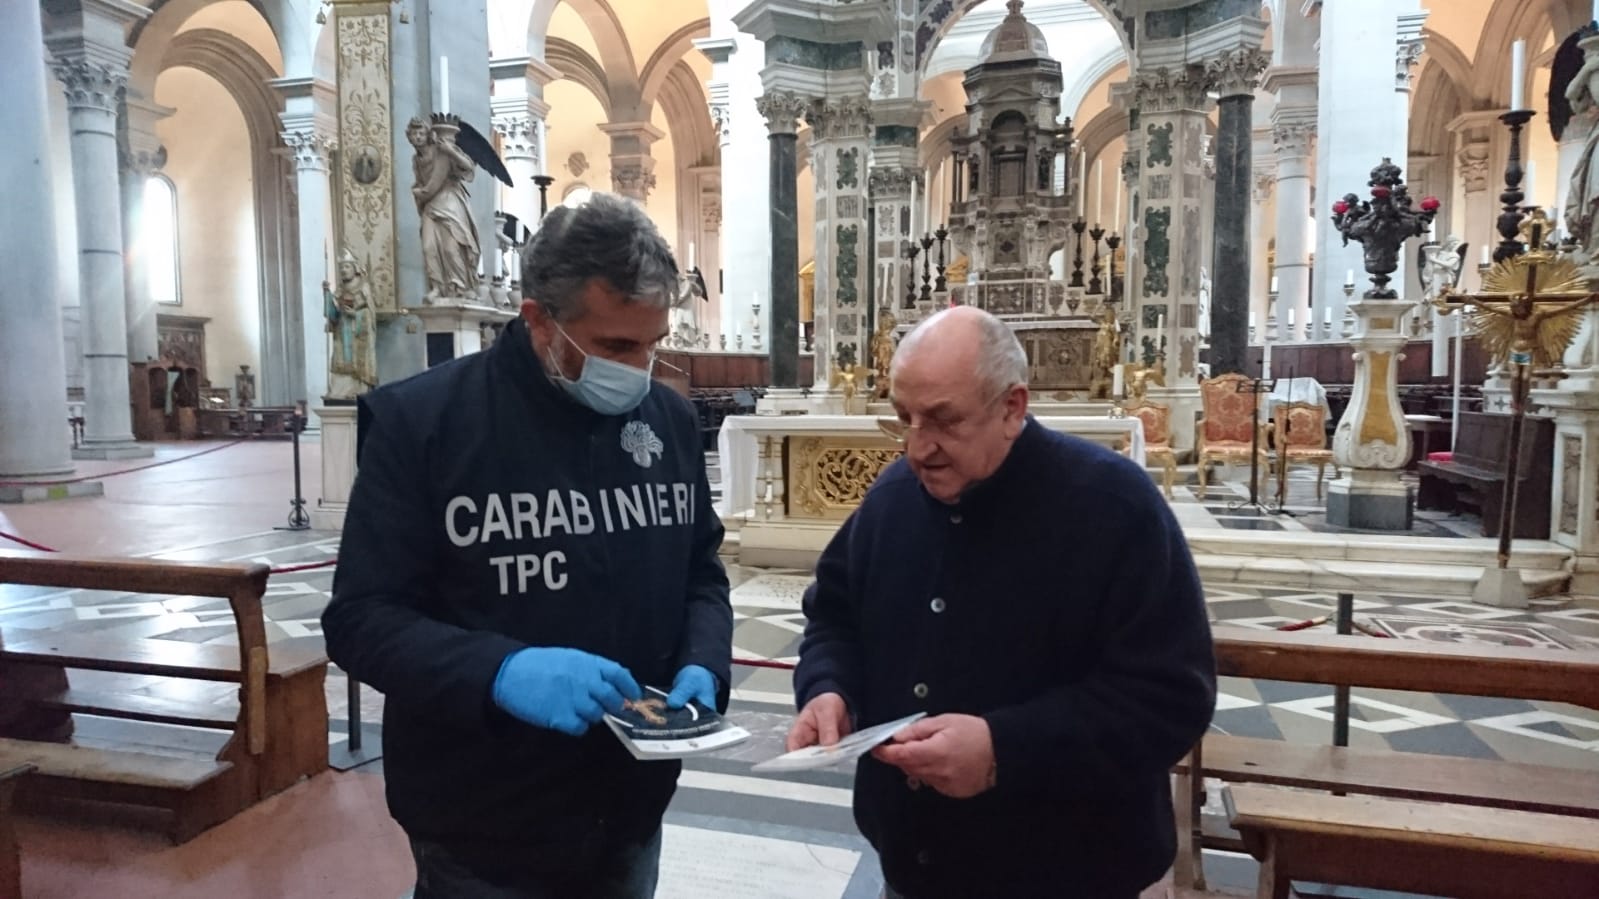 Il Comando Carabinieri Tutela Patrimonio Culturale intensifica i servizi preventivi nei luoghi della cultura durante l’emergenza COVID-19